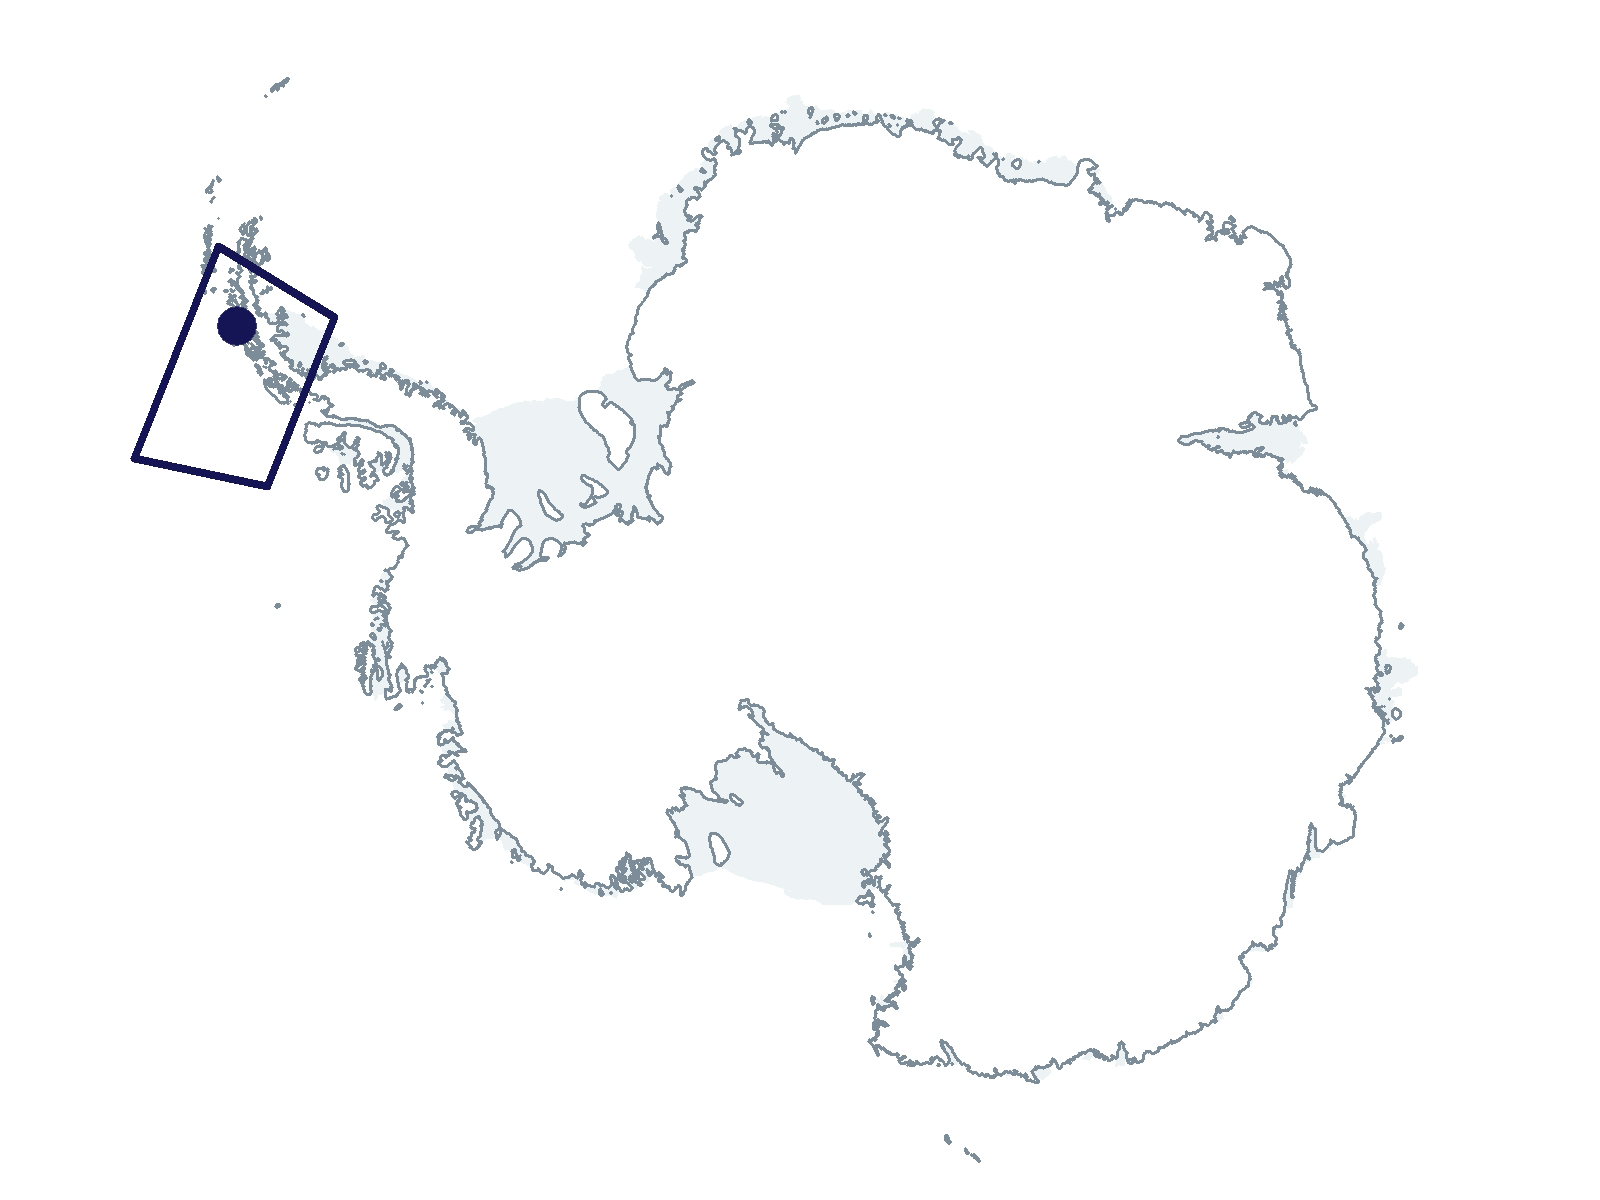 C-024-L/P Research Location(s): West Antarctic Peninsula